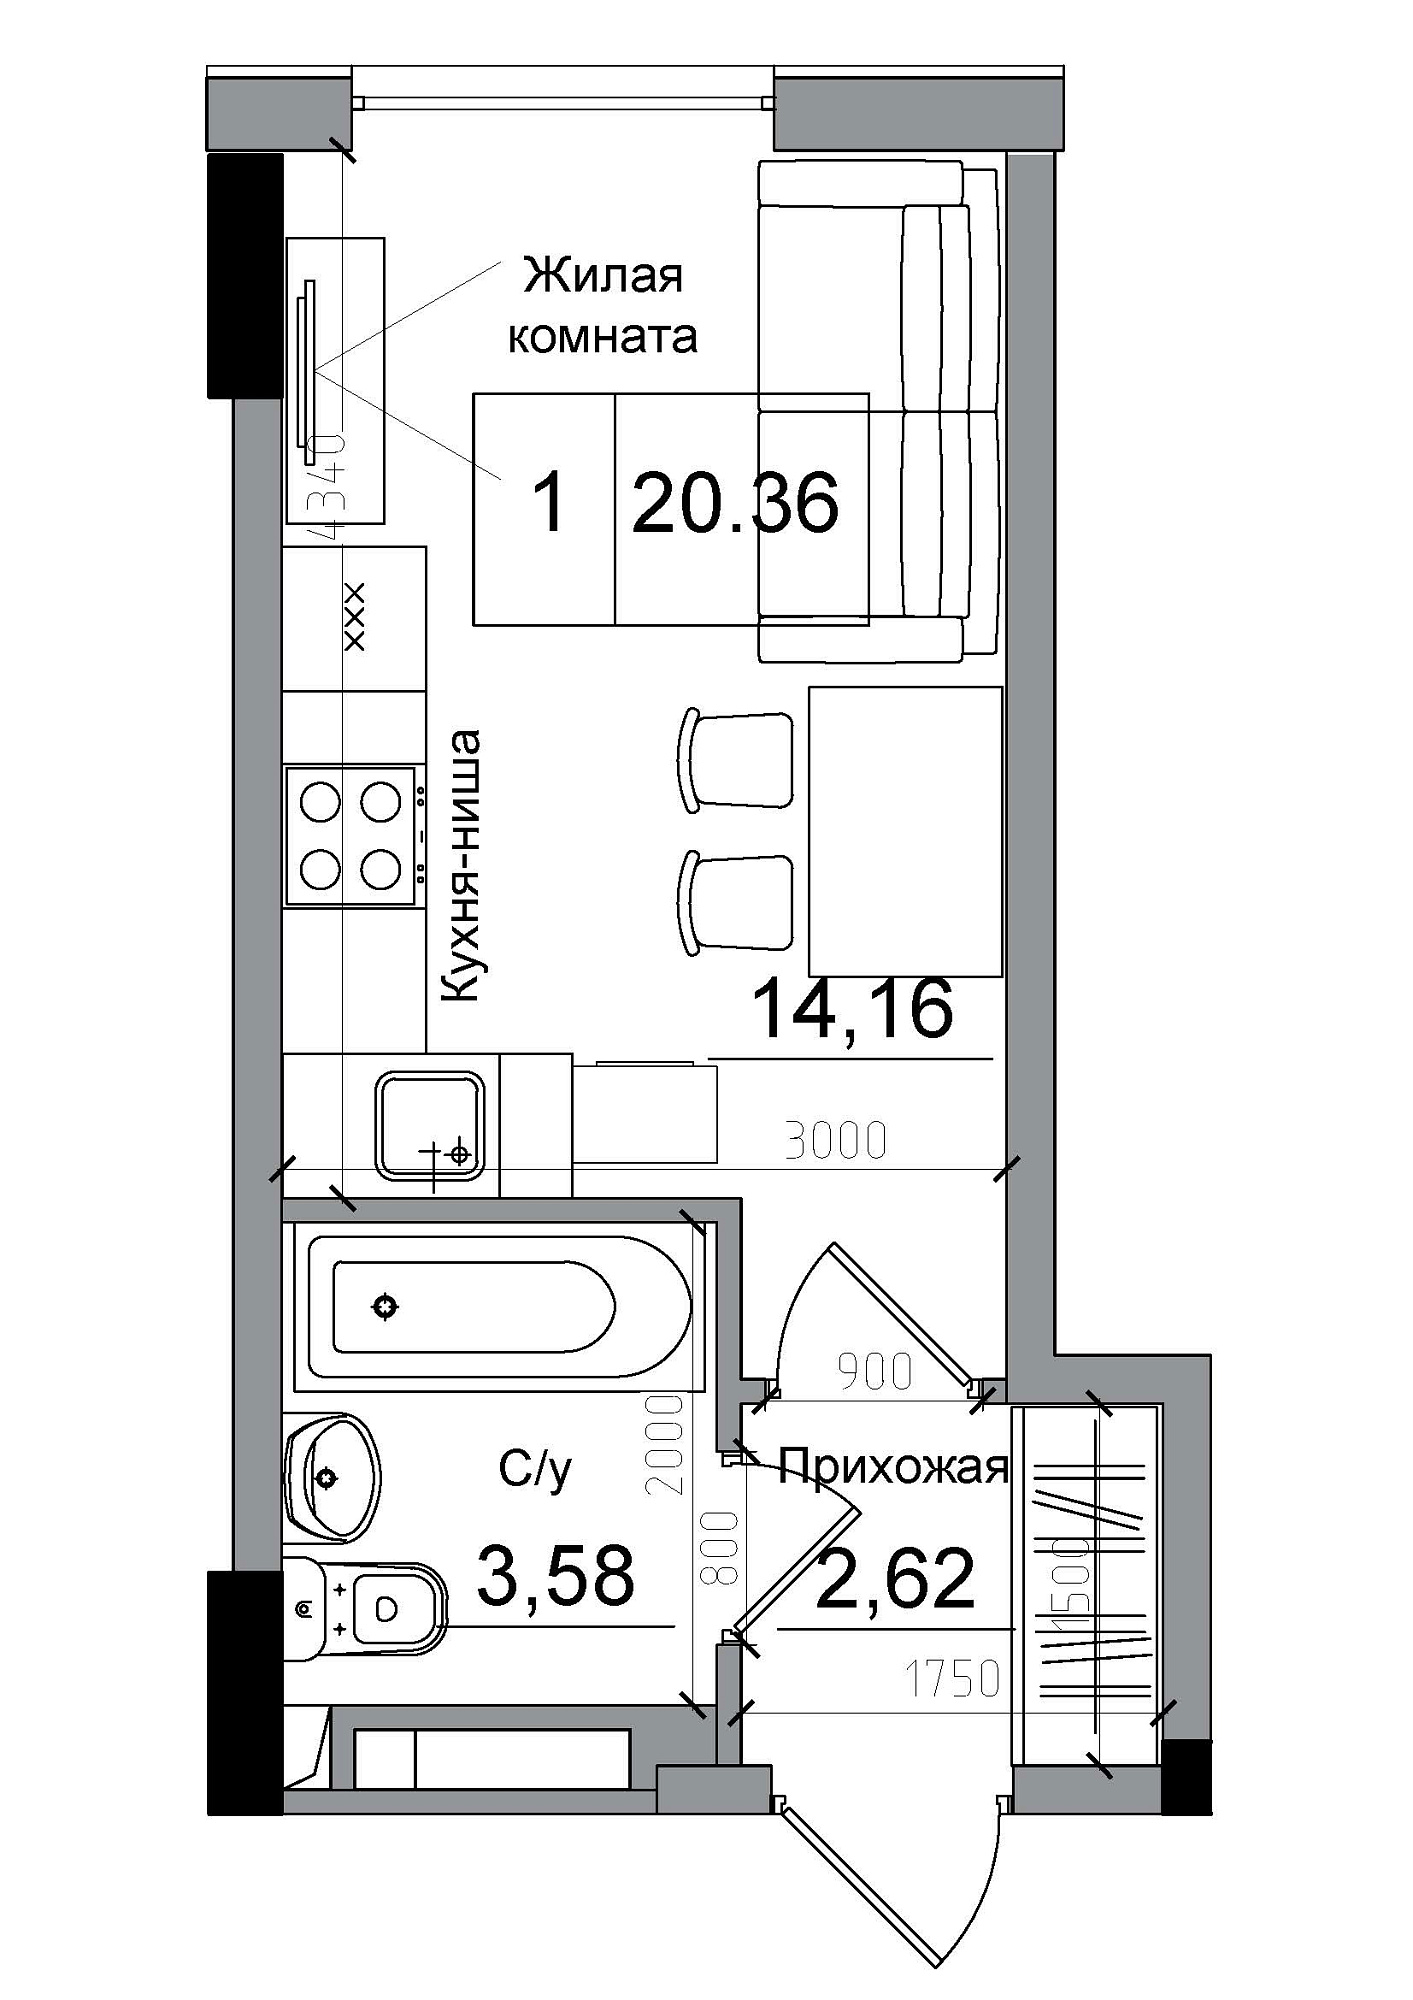 Планування Smart-квартира площею 20.36м2, AB-04-07/0007а.